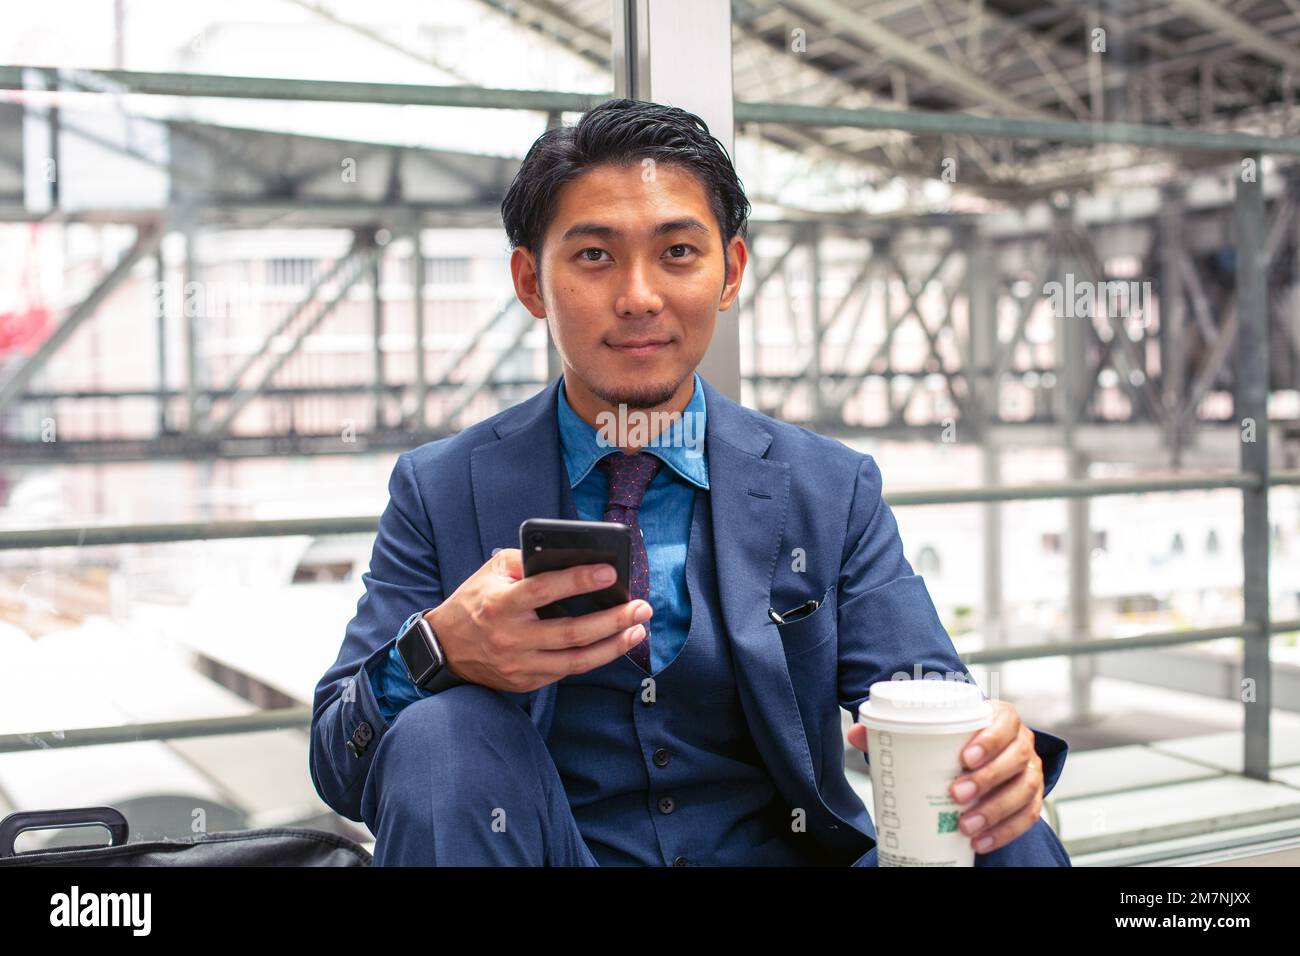 Un joven hombre de negocios con un traje azul en una ciudad, mirando la pantalla de su teléfono móvil, enviando mensajes de texto o leyendo un mensaje. Foto de stock